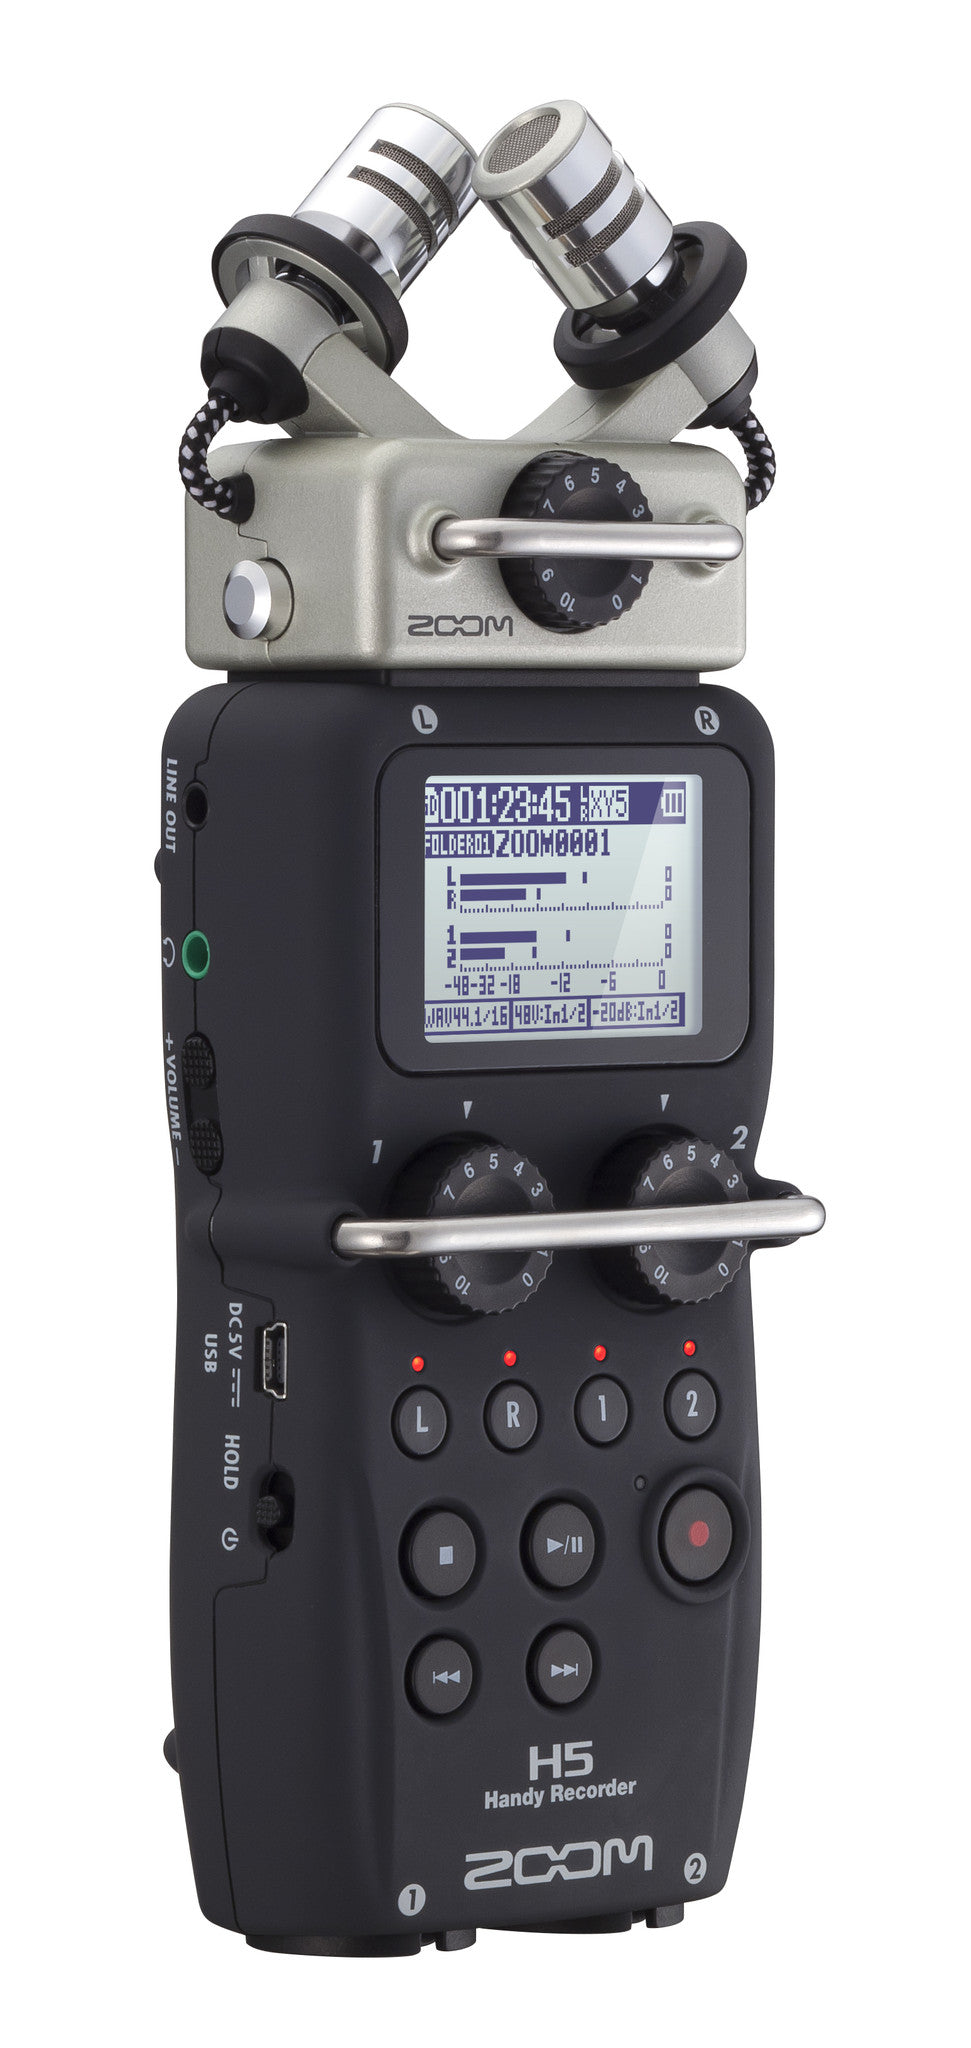 Zoom H5 Handy Recorder, video audio microphones & recorders, Zoom - Pictureline  - 2